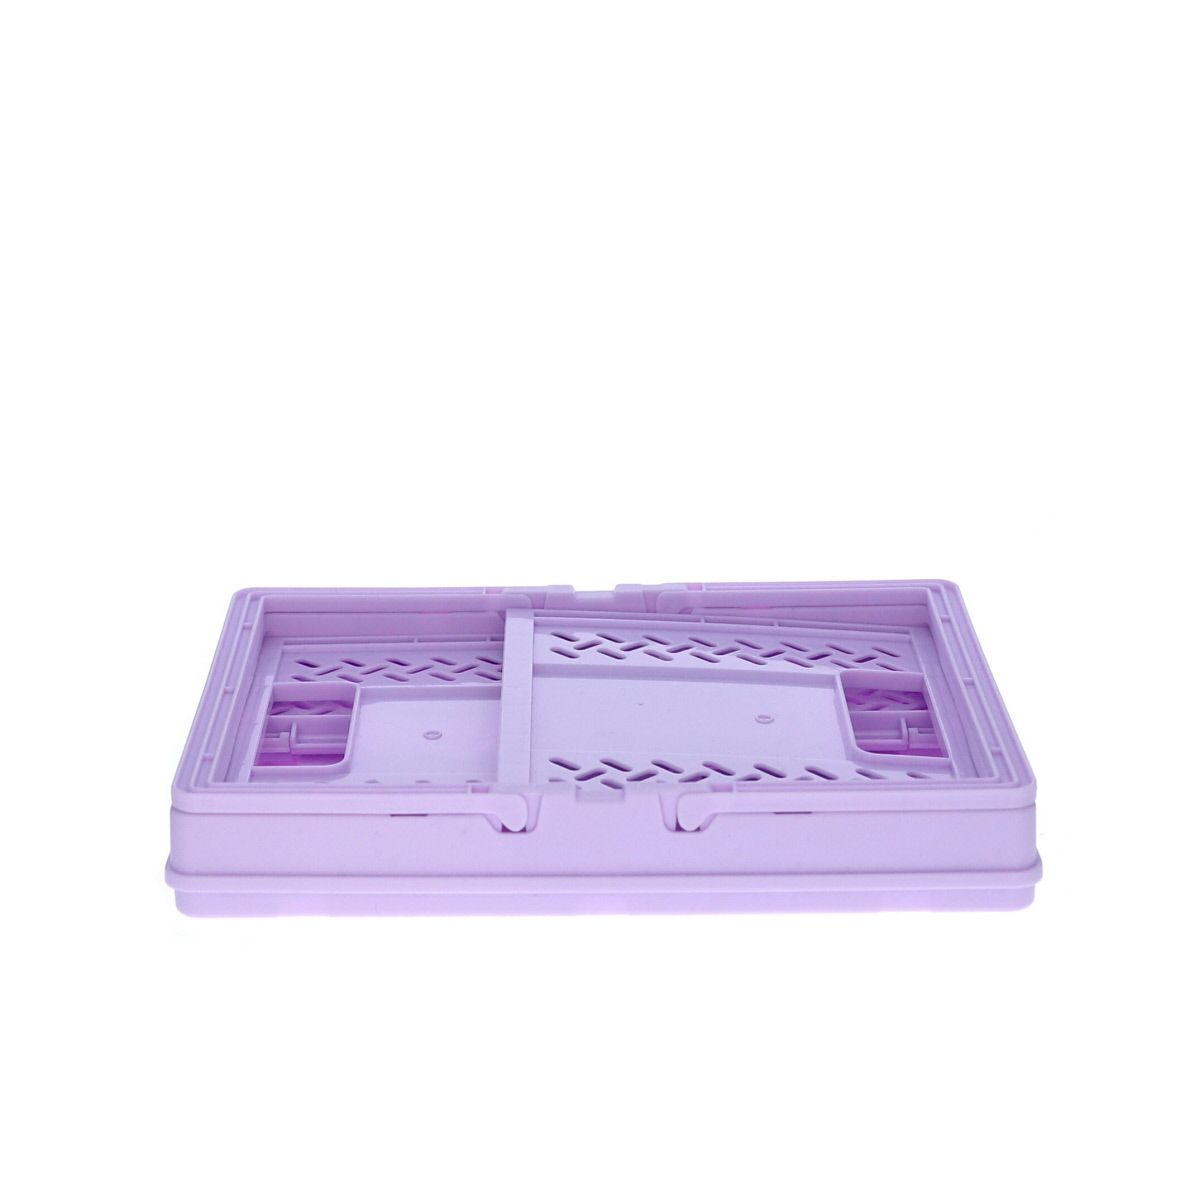 Caisse de rangement pliable en plastique violet Roodoudou - Le petit Souk,  caisse en plastique rangement 